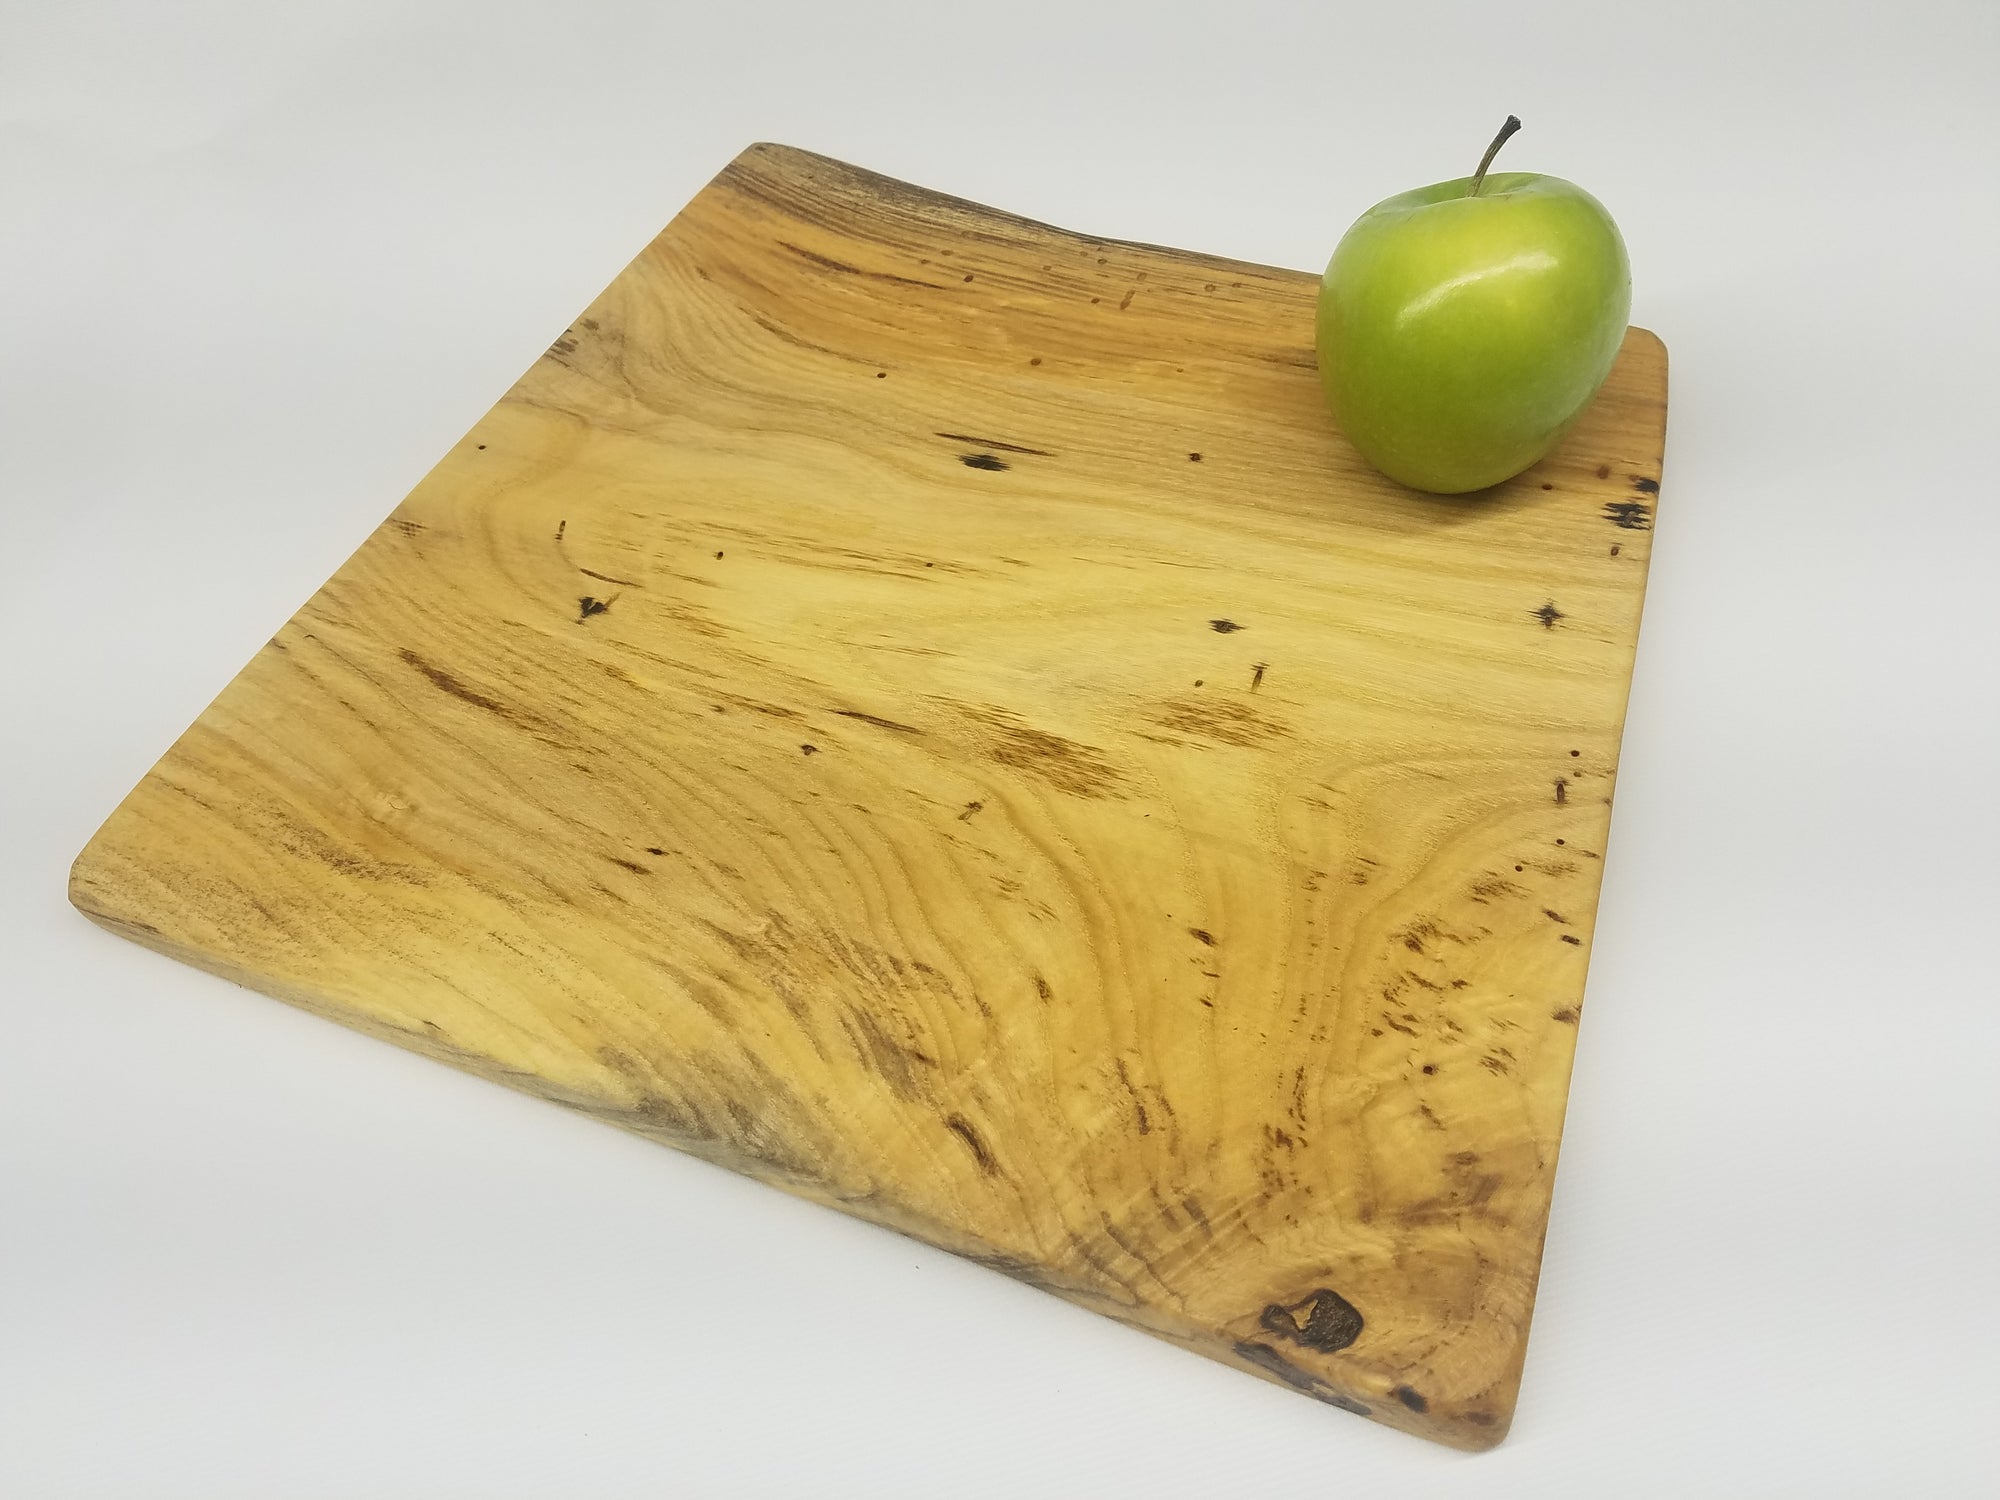 Natural Wood Serving Board- Charcuterie Board- Platter- Tray- Hackberr -  Kentucky LiveEdge